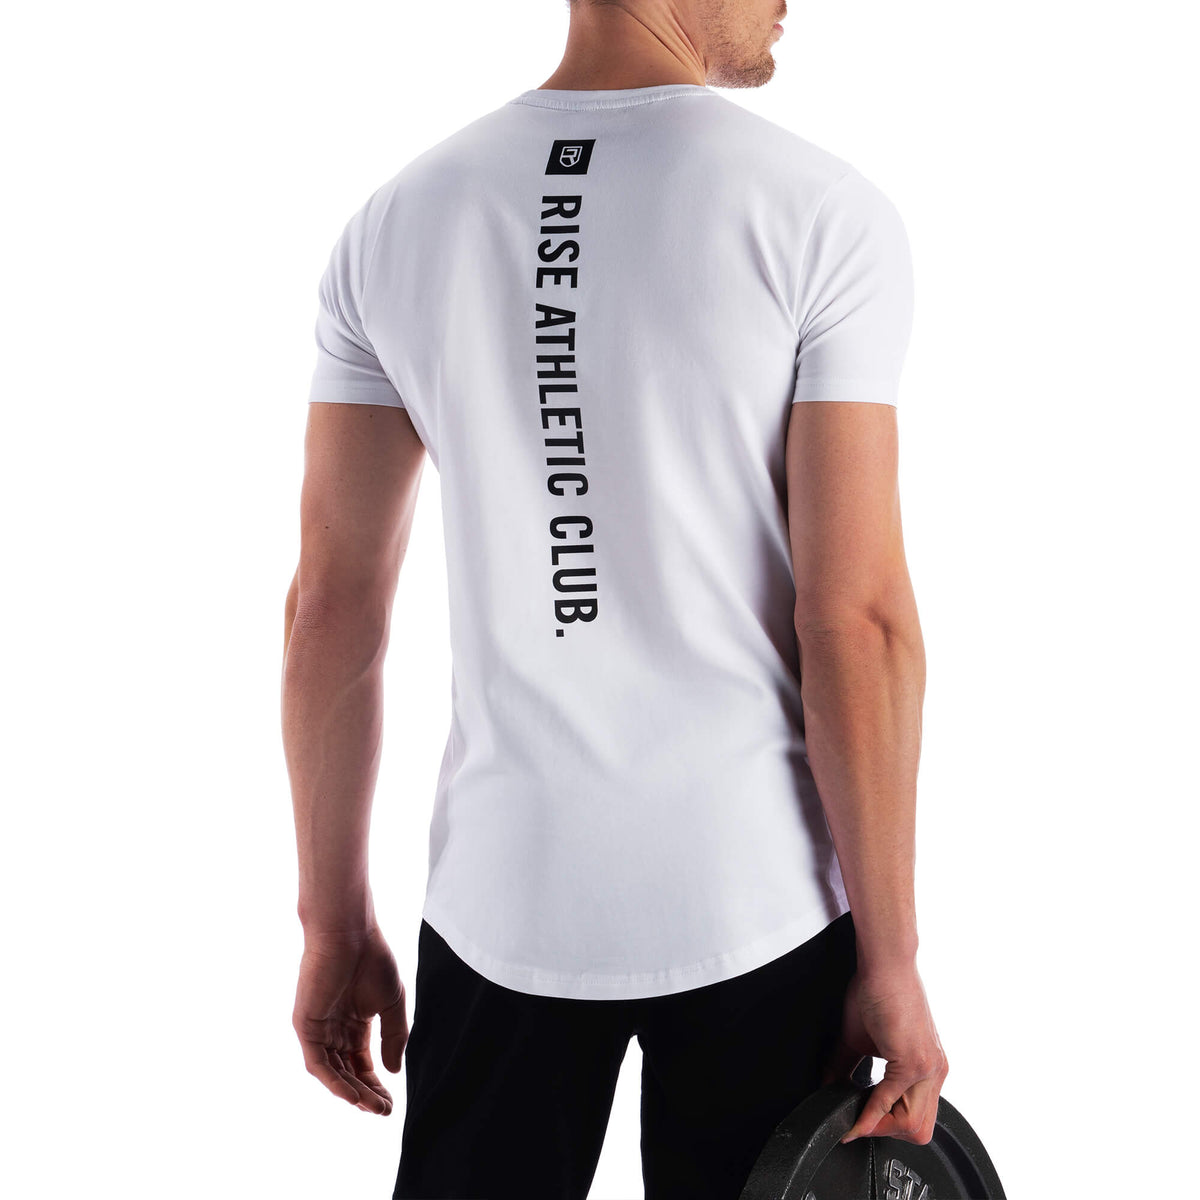 Athletic Club T-Shirt - White - Rise